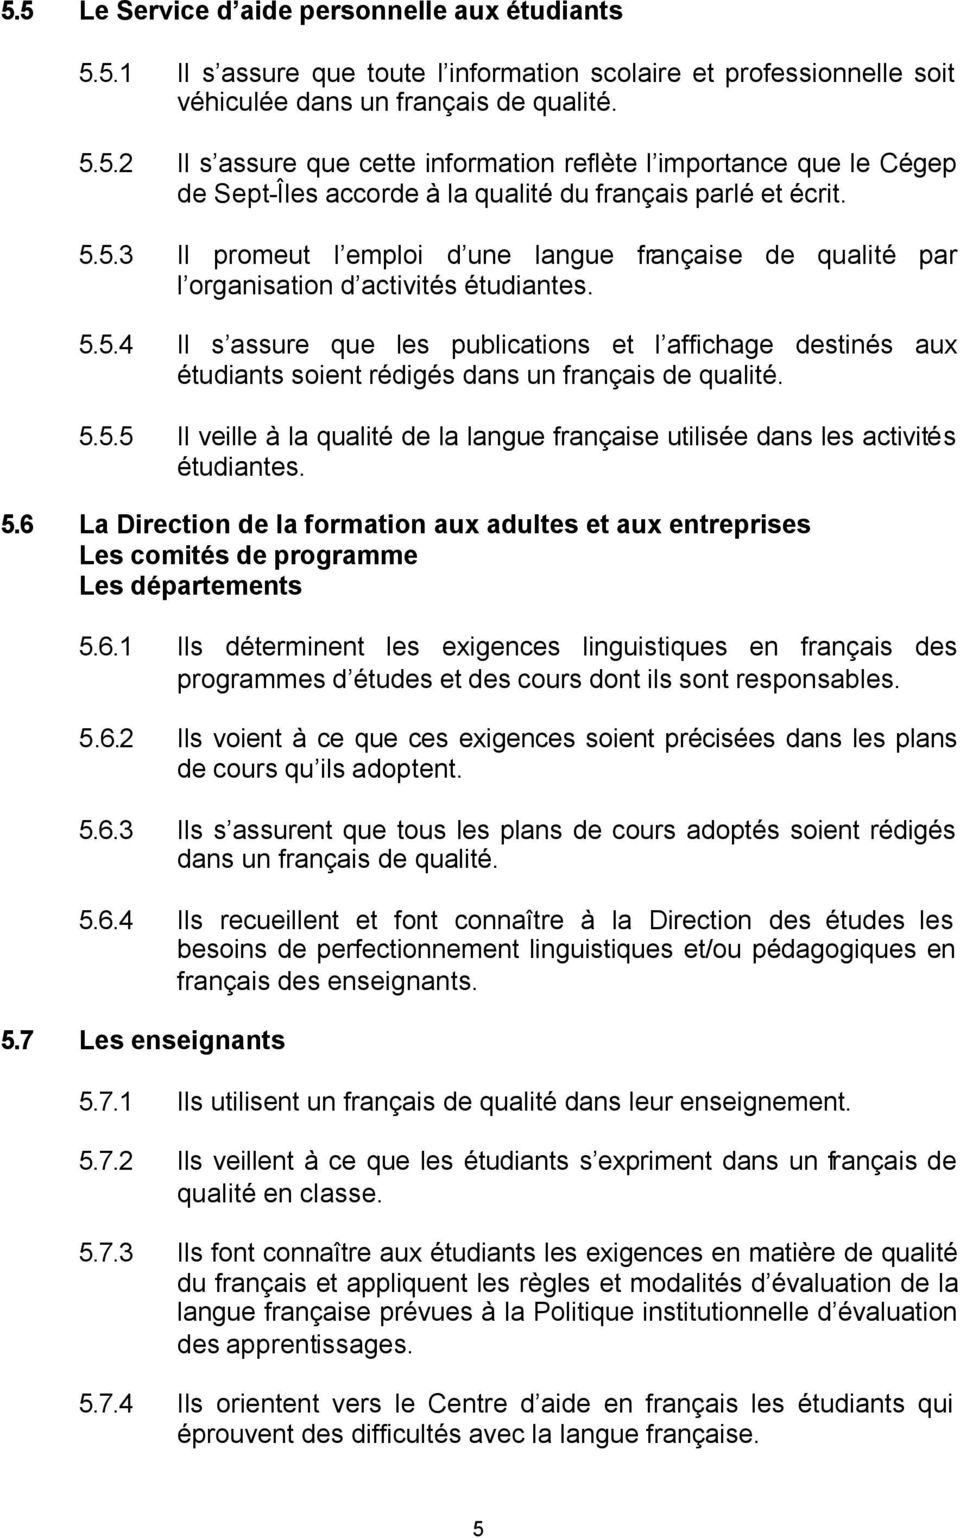 5.5.5 Il veille à la qualité de la langue française utilisée dans les activités étudiantes. 5.6 La Direction de la formation aux adultes et aux entreprises Les comités de programme Les départements 5.